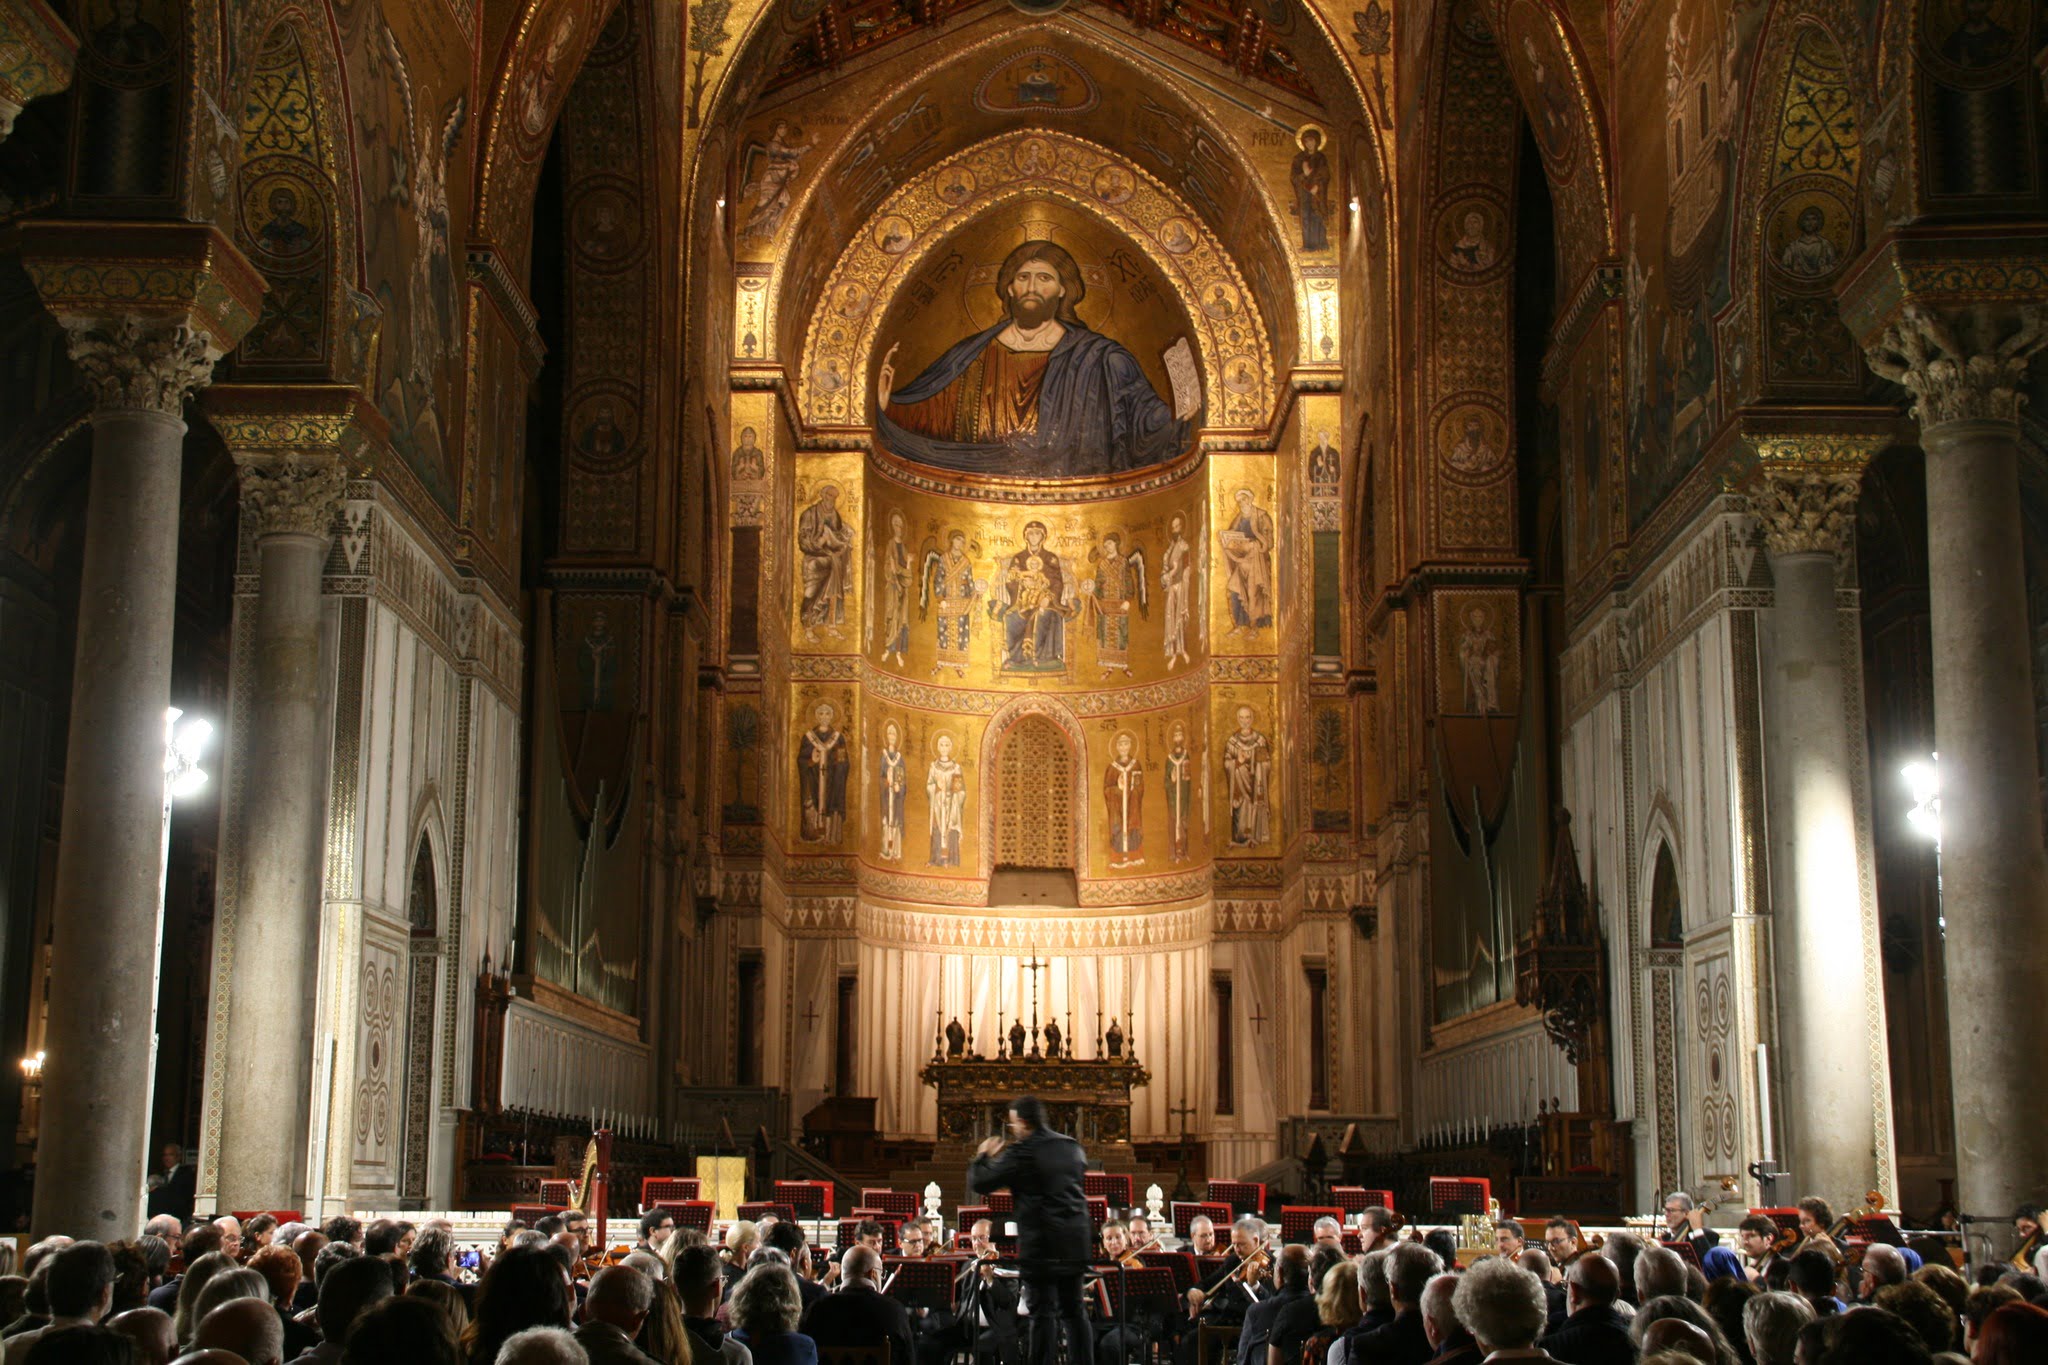 La musica sacra risuonerà nel Duomo di Monreale con i più grandi nomi della classica